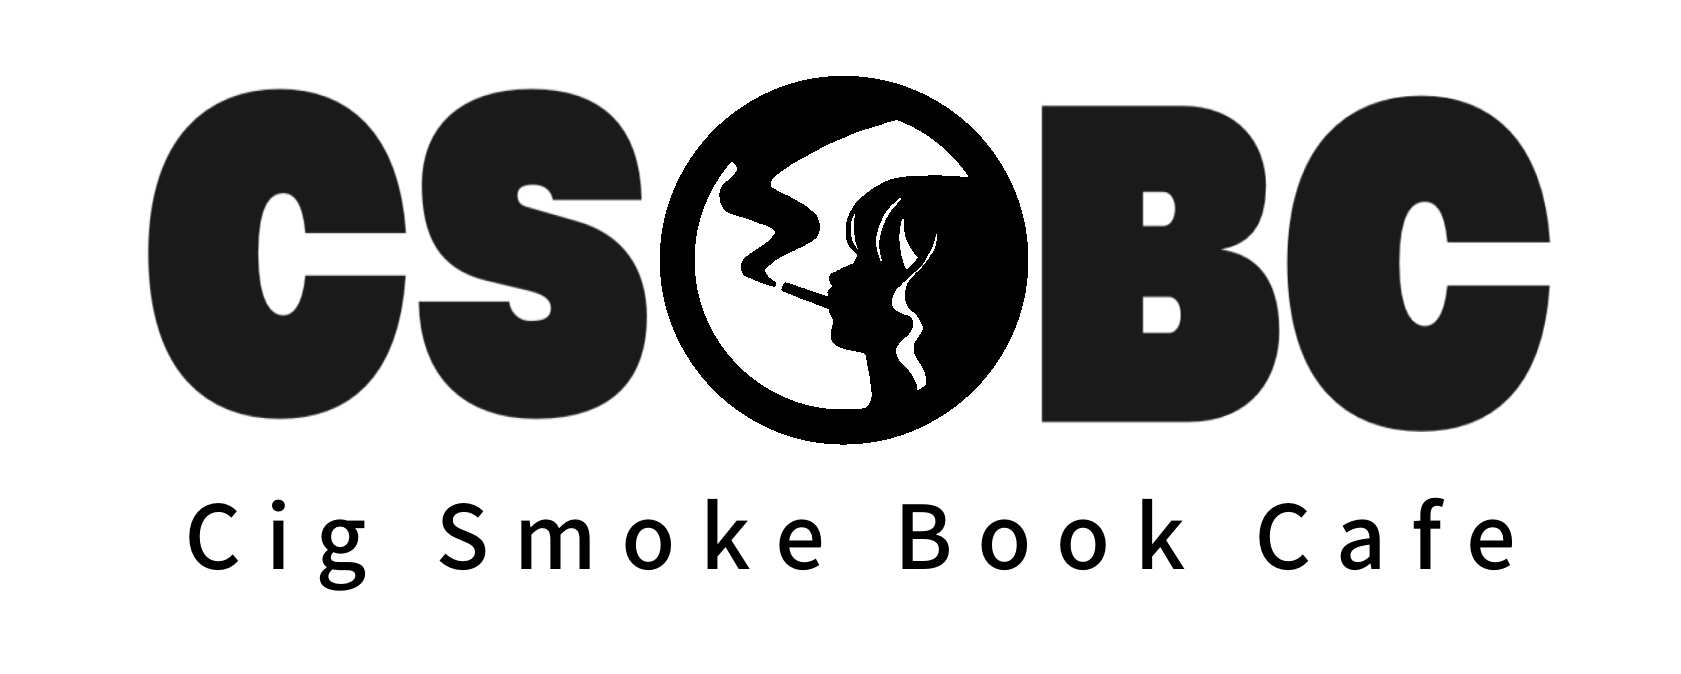 Cig Smoke Book Cafe